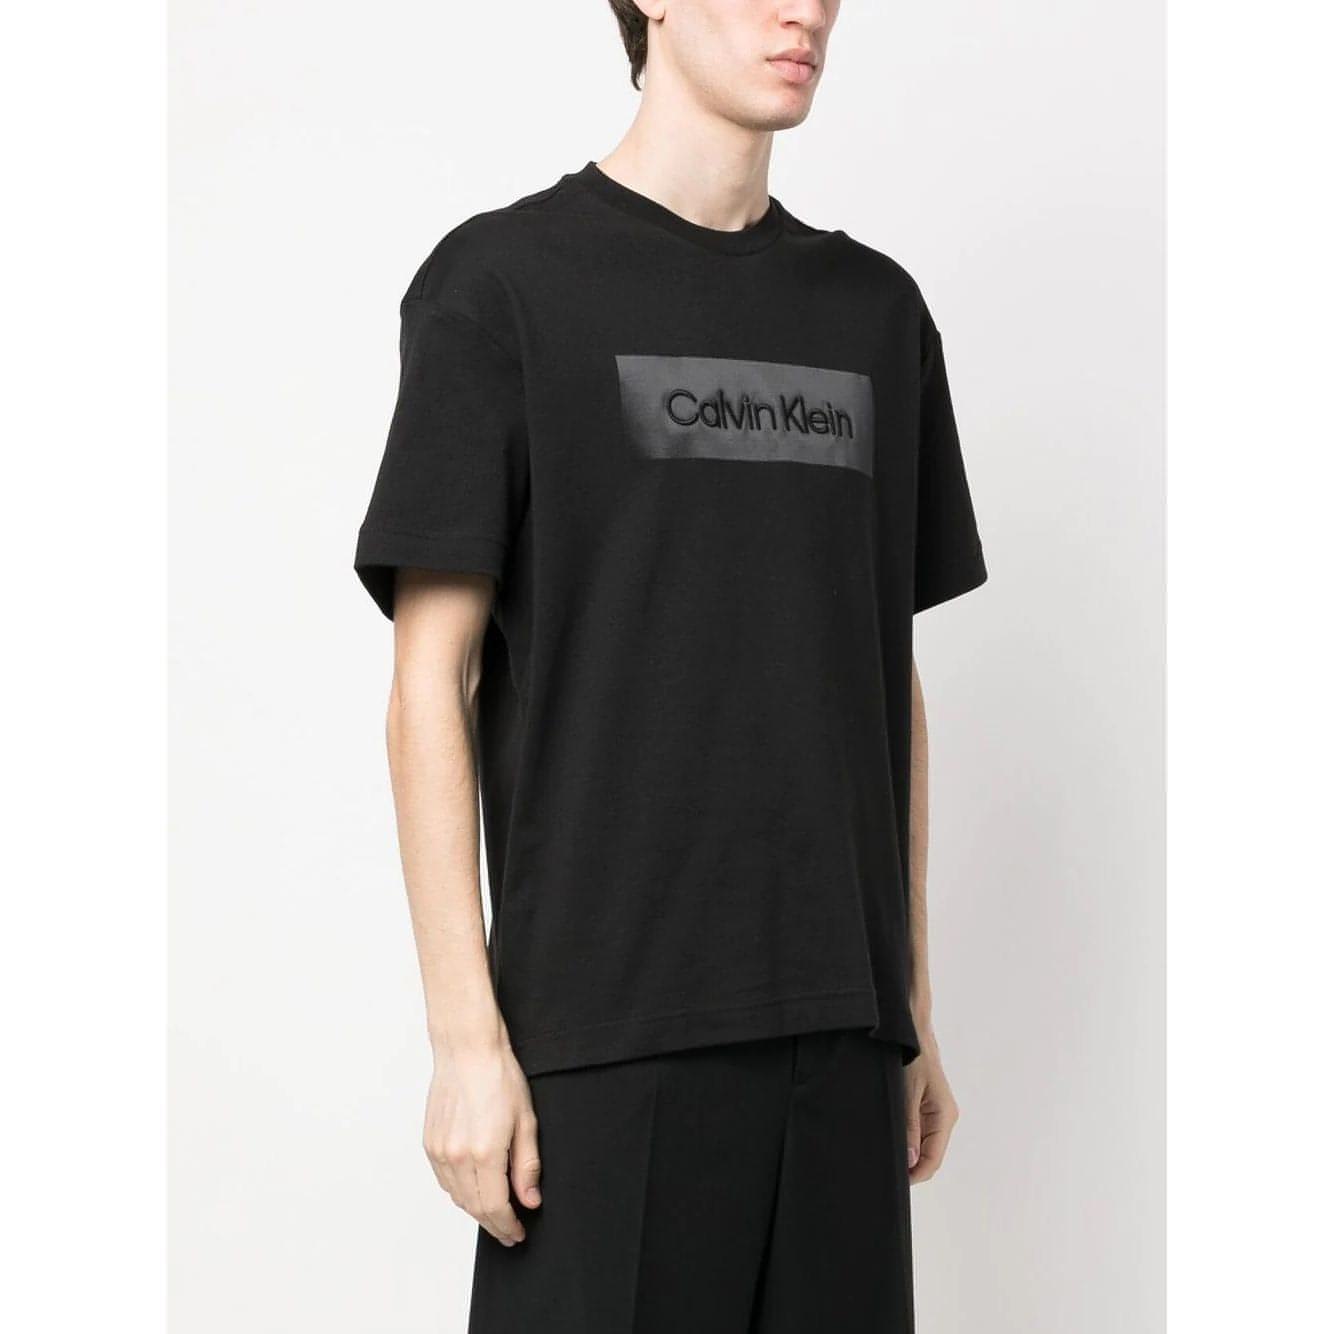 CALVIN KLEIN vyriški juodi marškinėliai Embroidered comfort t-shirt